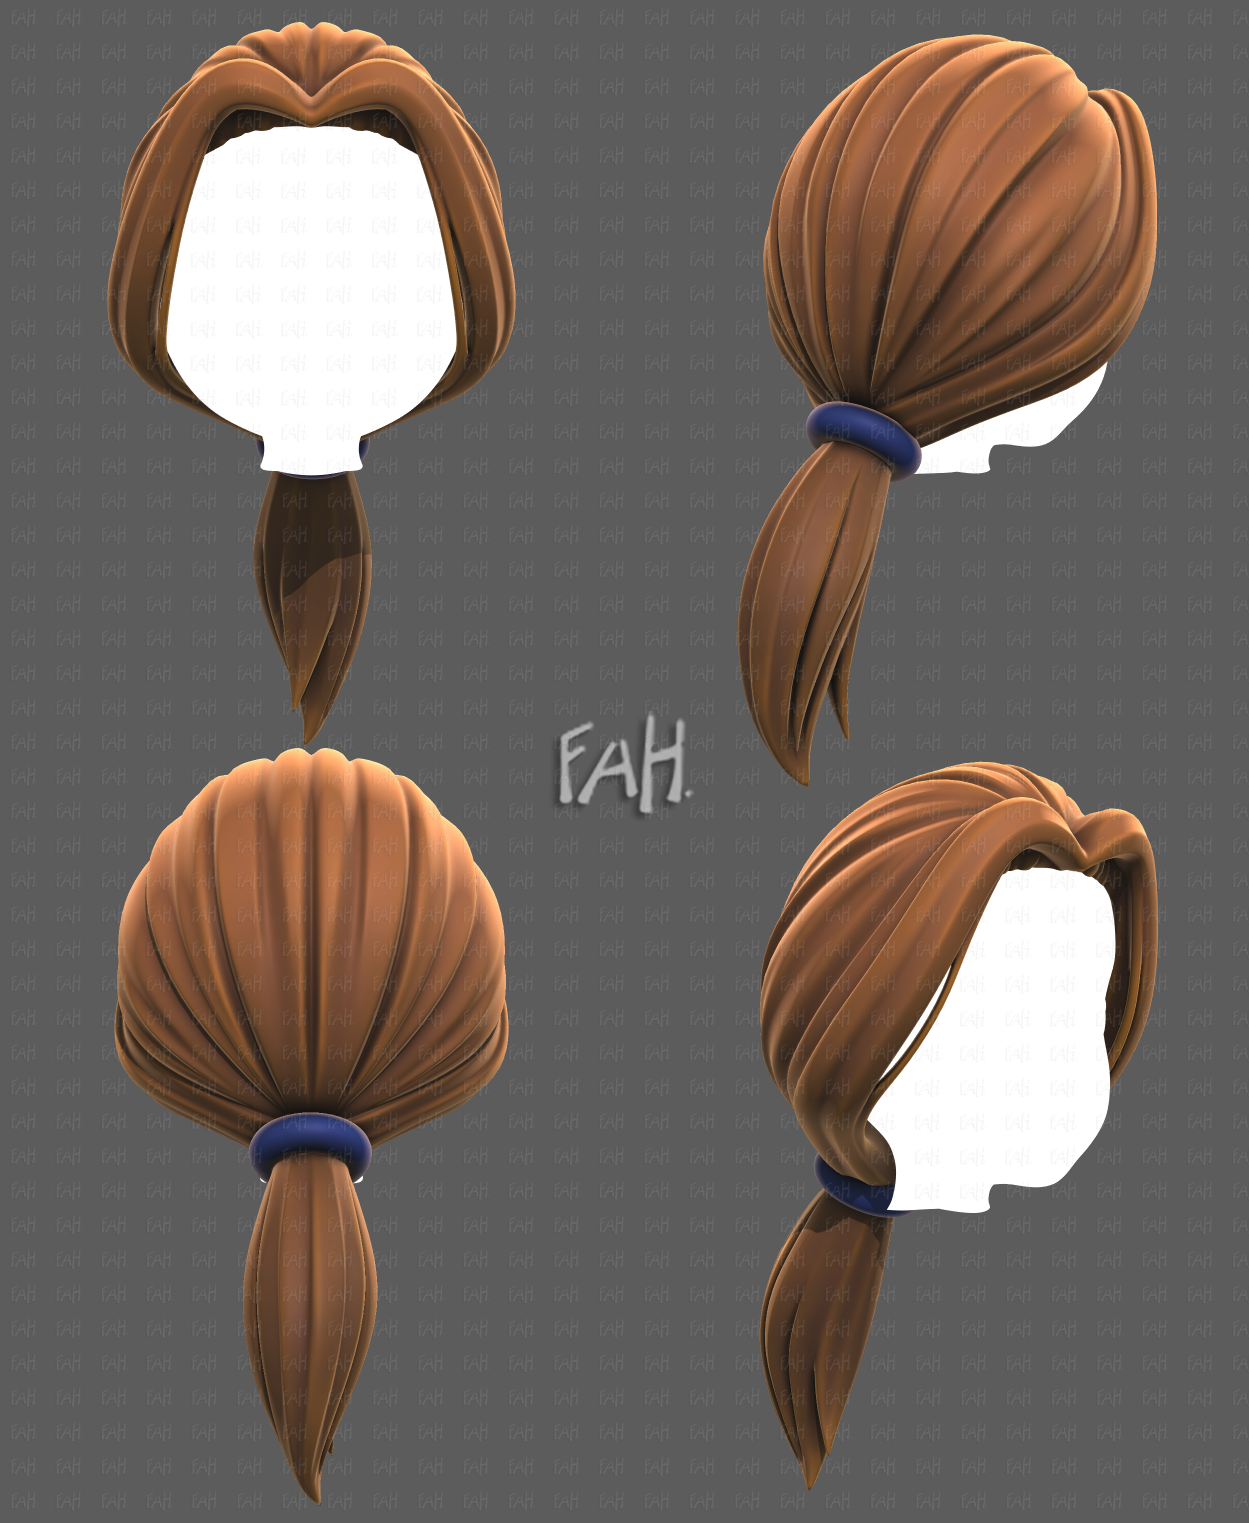 Base Hair for girl V32 3D Model in Clothing 3DExport